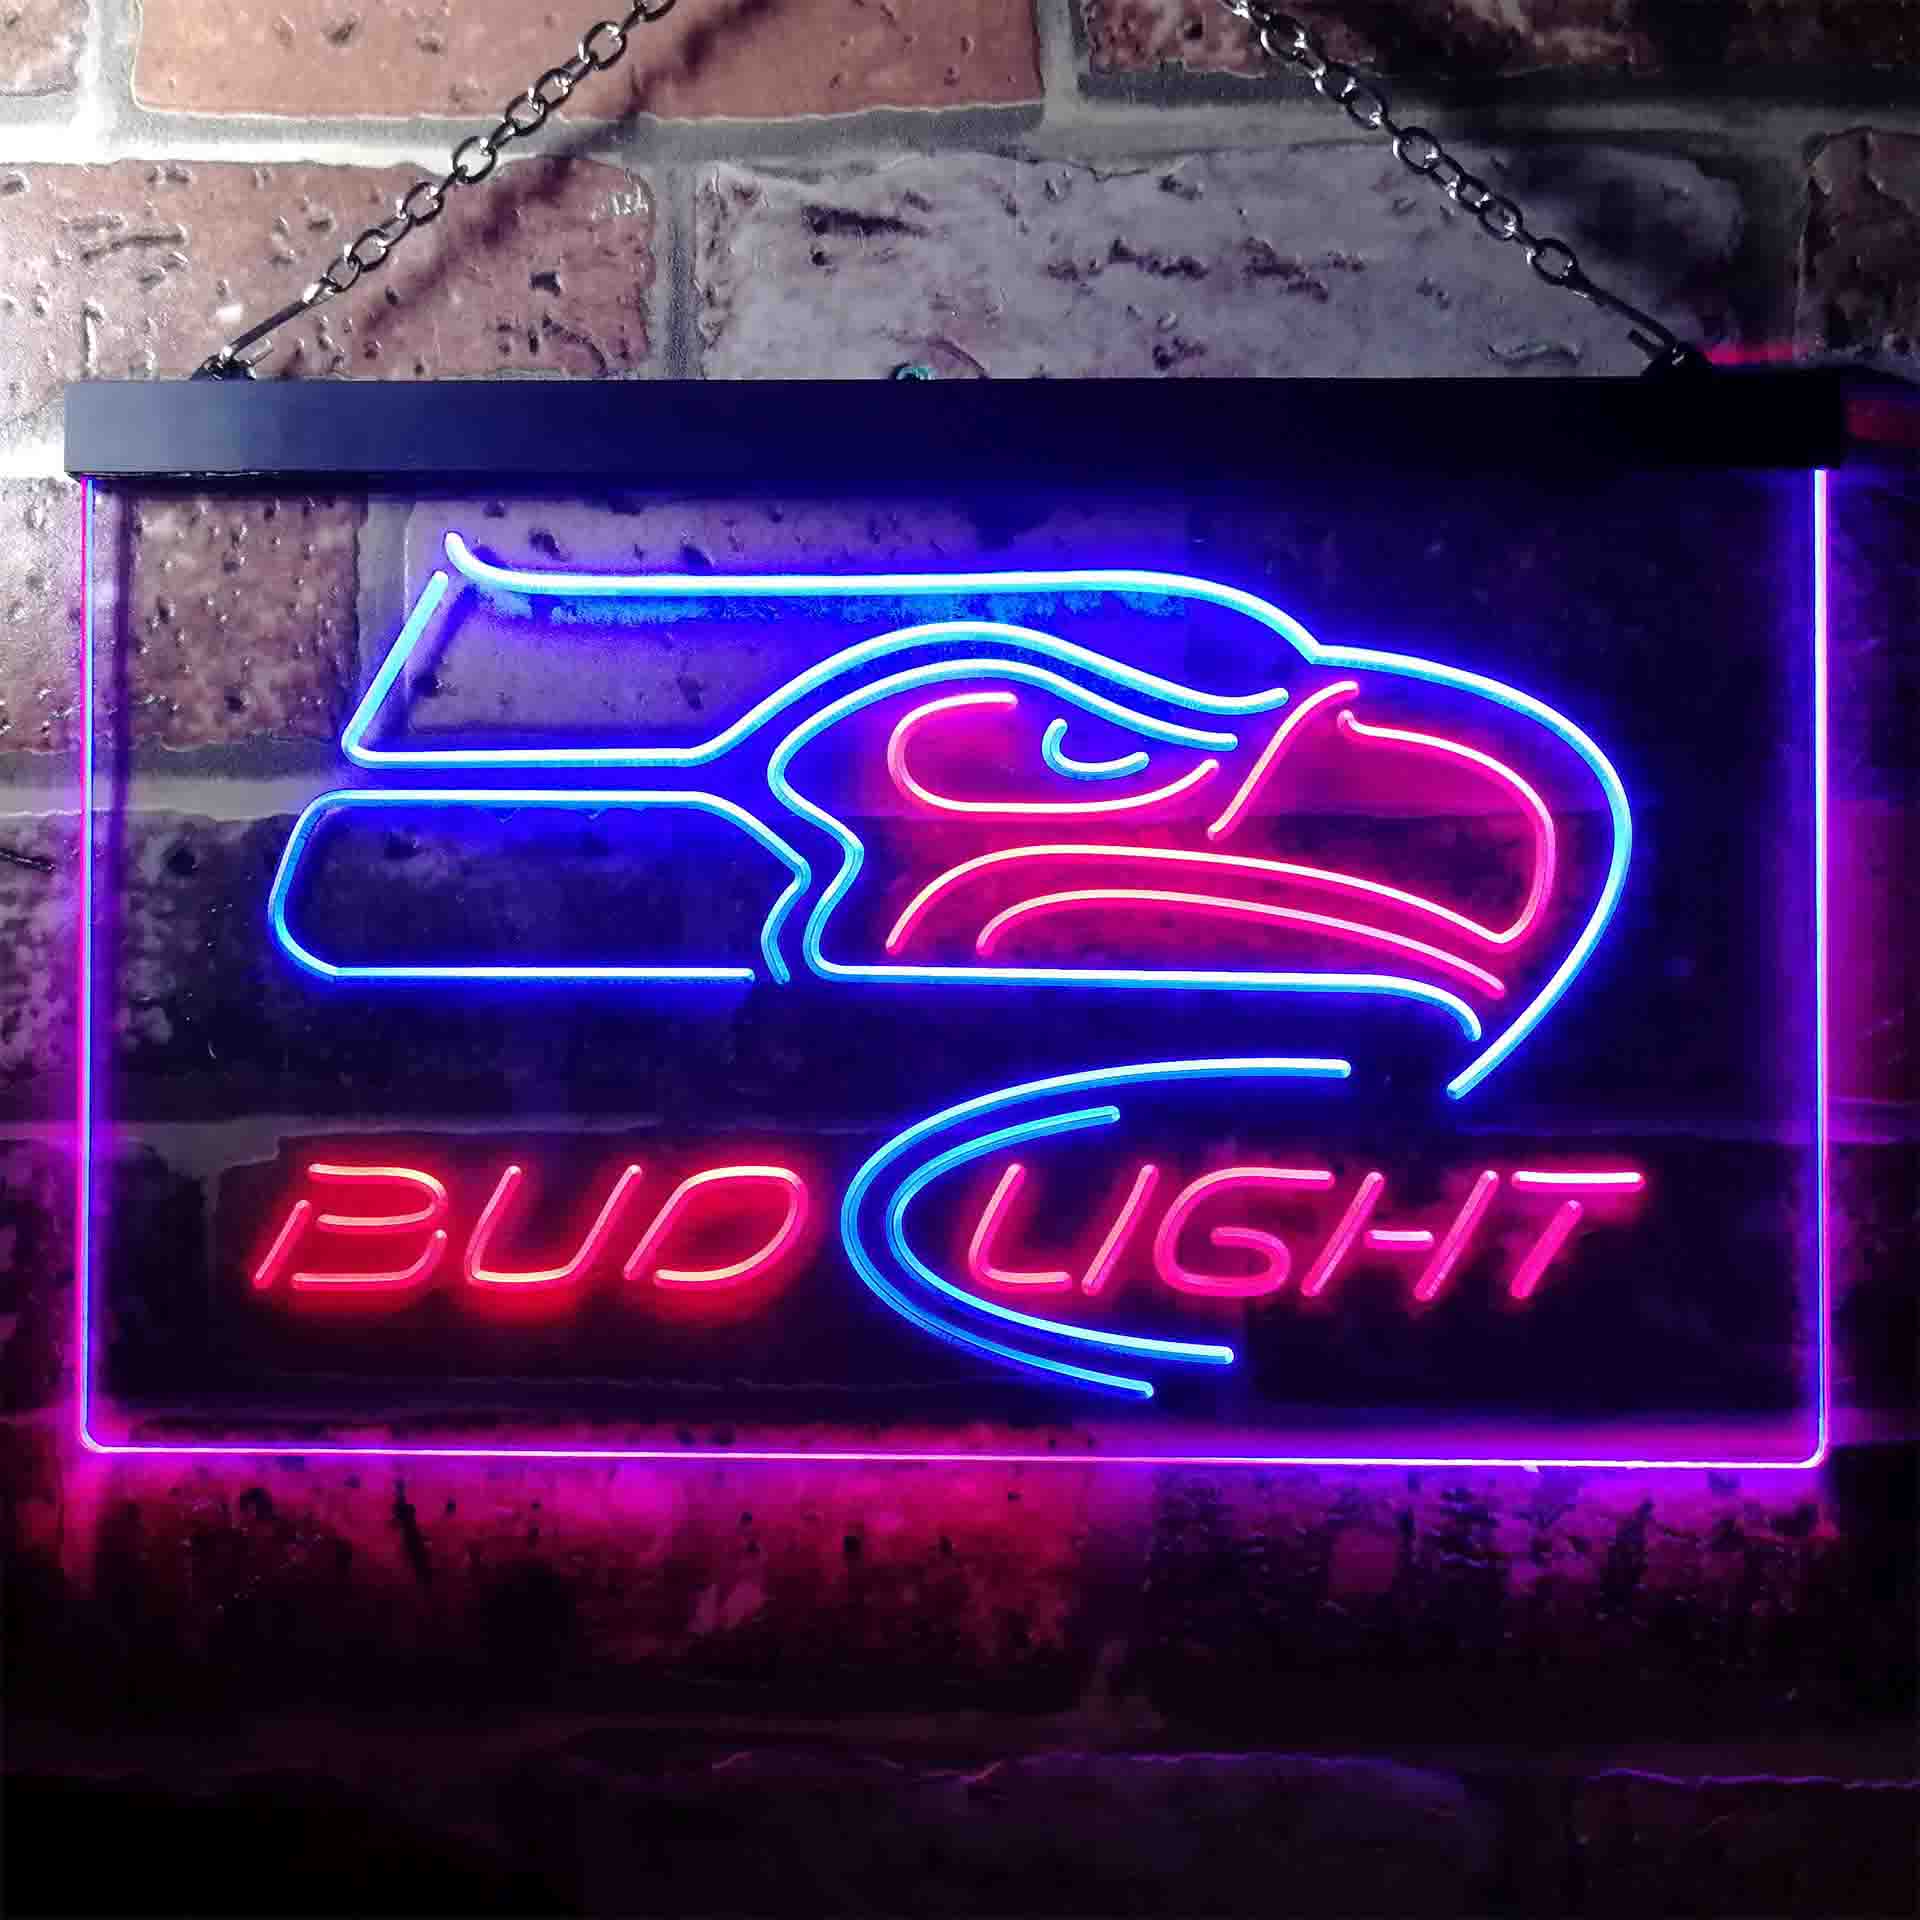 Seattle Seahawks Bud Light Neon-Like LED Sign